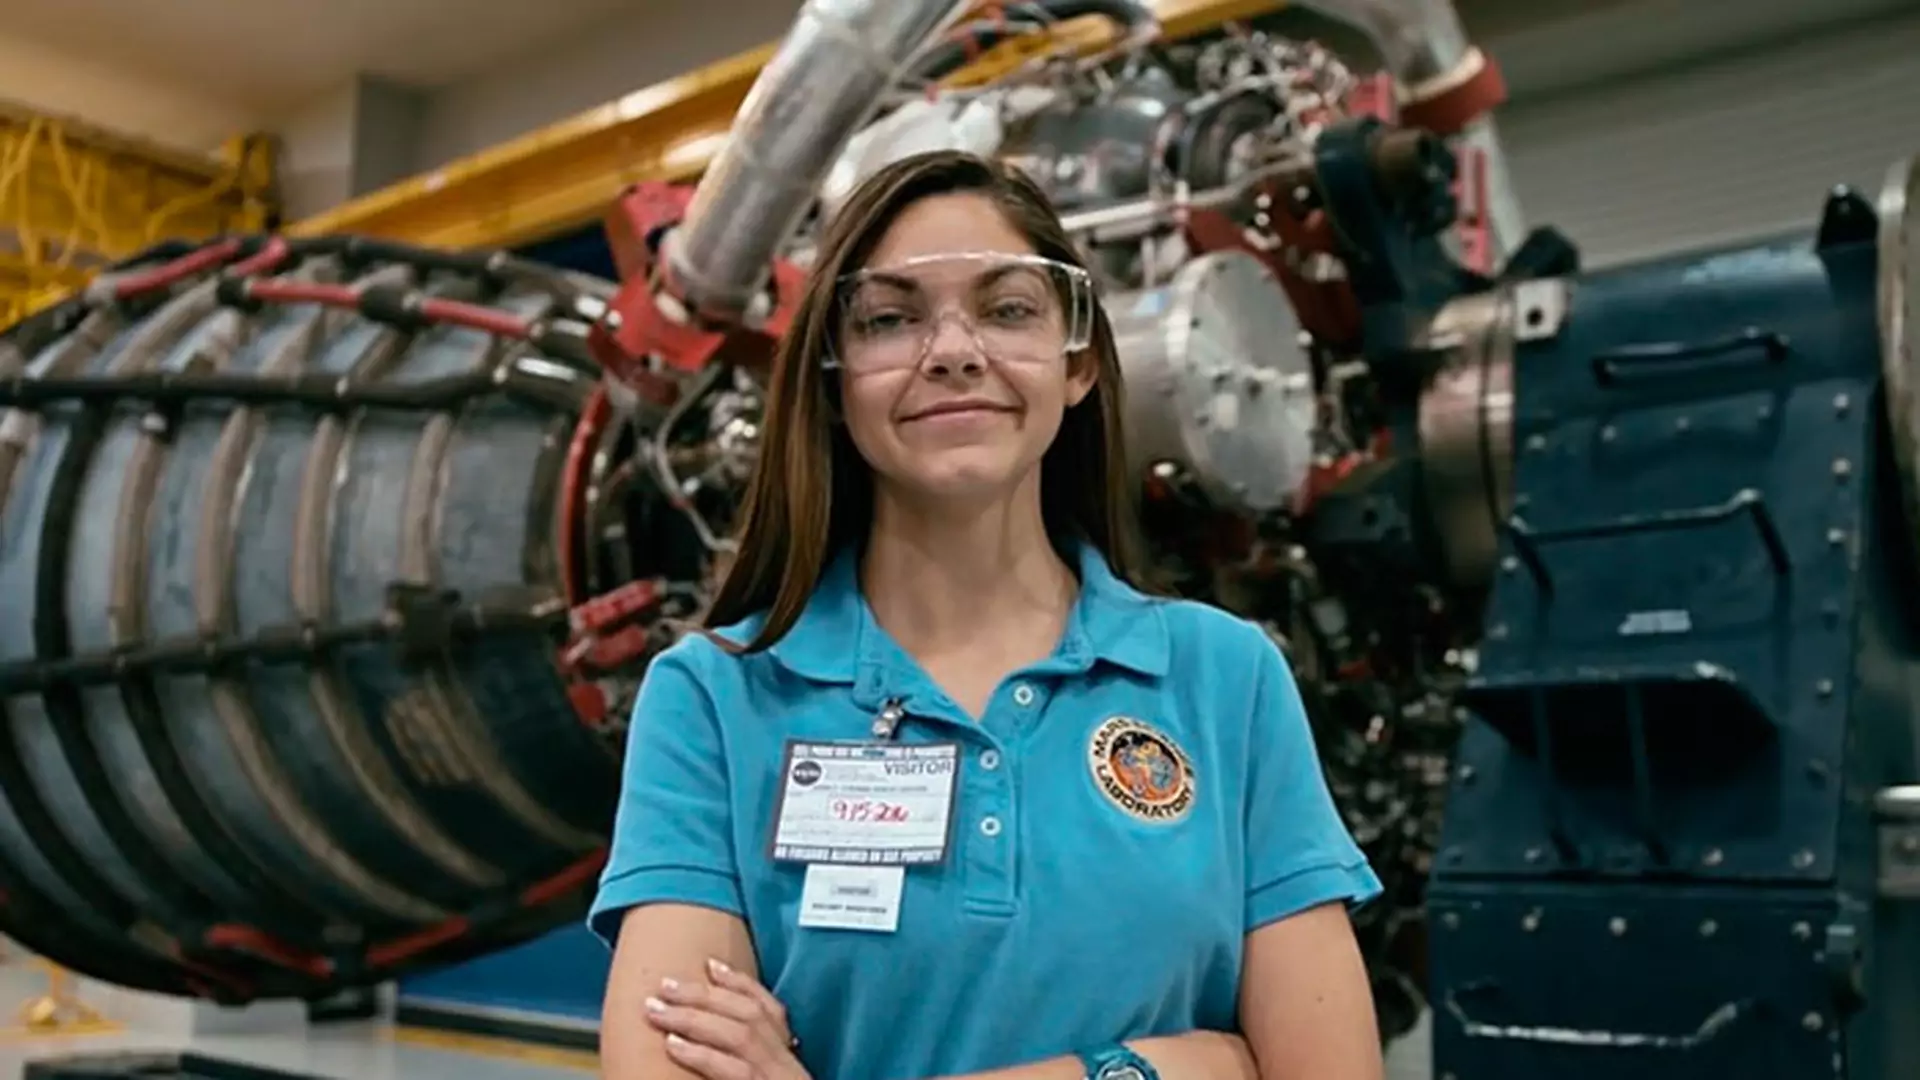 NASA trenuje nastolatkę do lotu na Marsa. Tak przechodzi się do historii